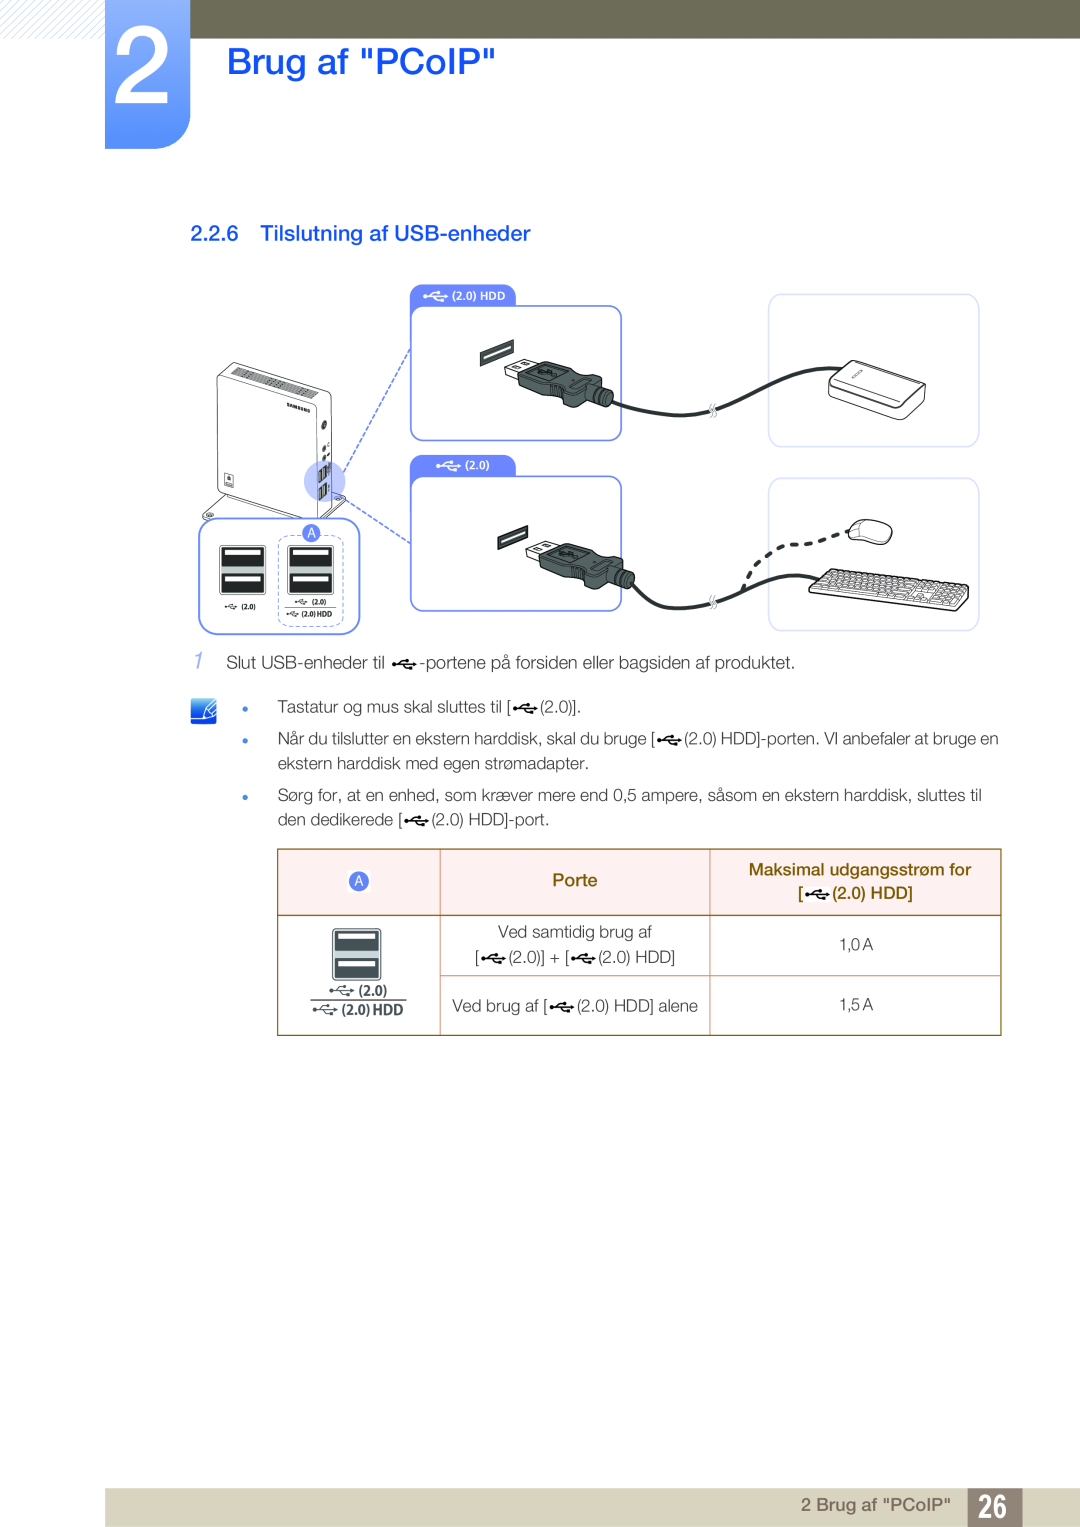 Samsung LF-NXN2N/EN, LF00FNXPFBZXEN Tilslutning af USB-enheder, Brug af PCoIP, Porte, Maksimal udgangsstrøm for 2.0 HDD 